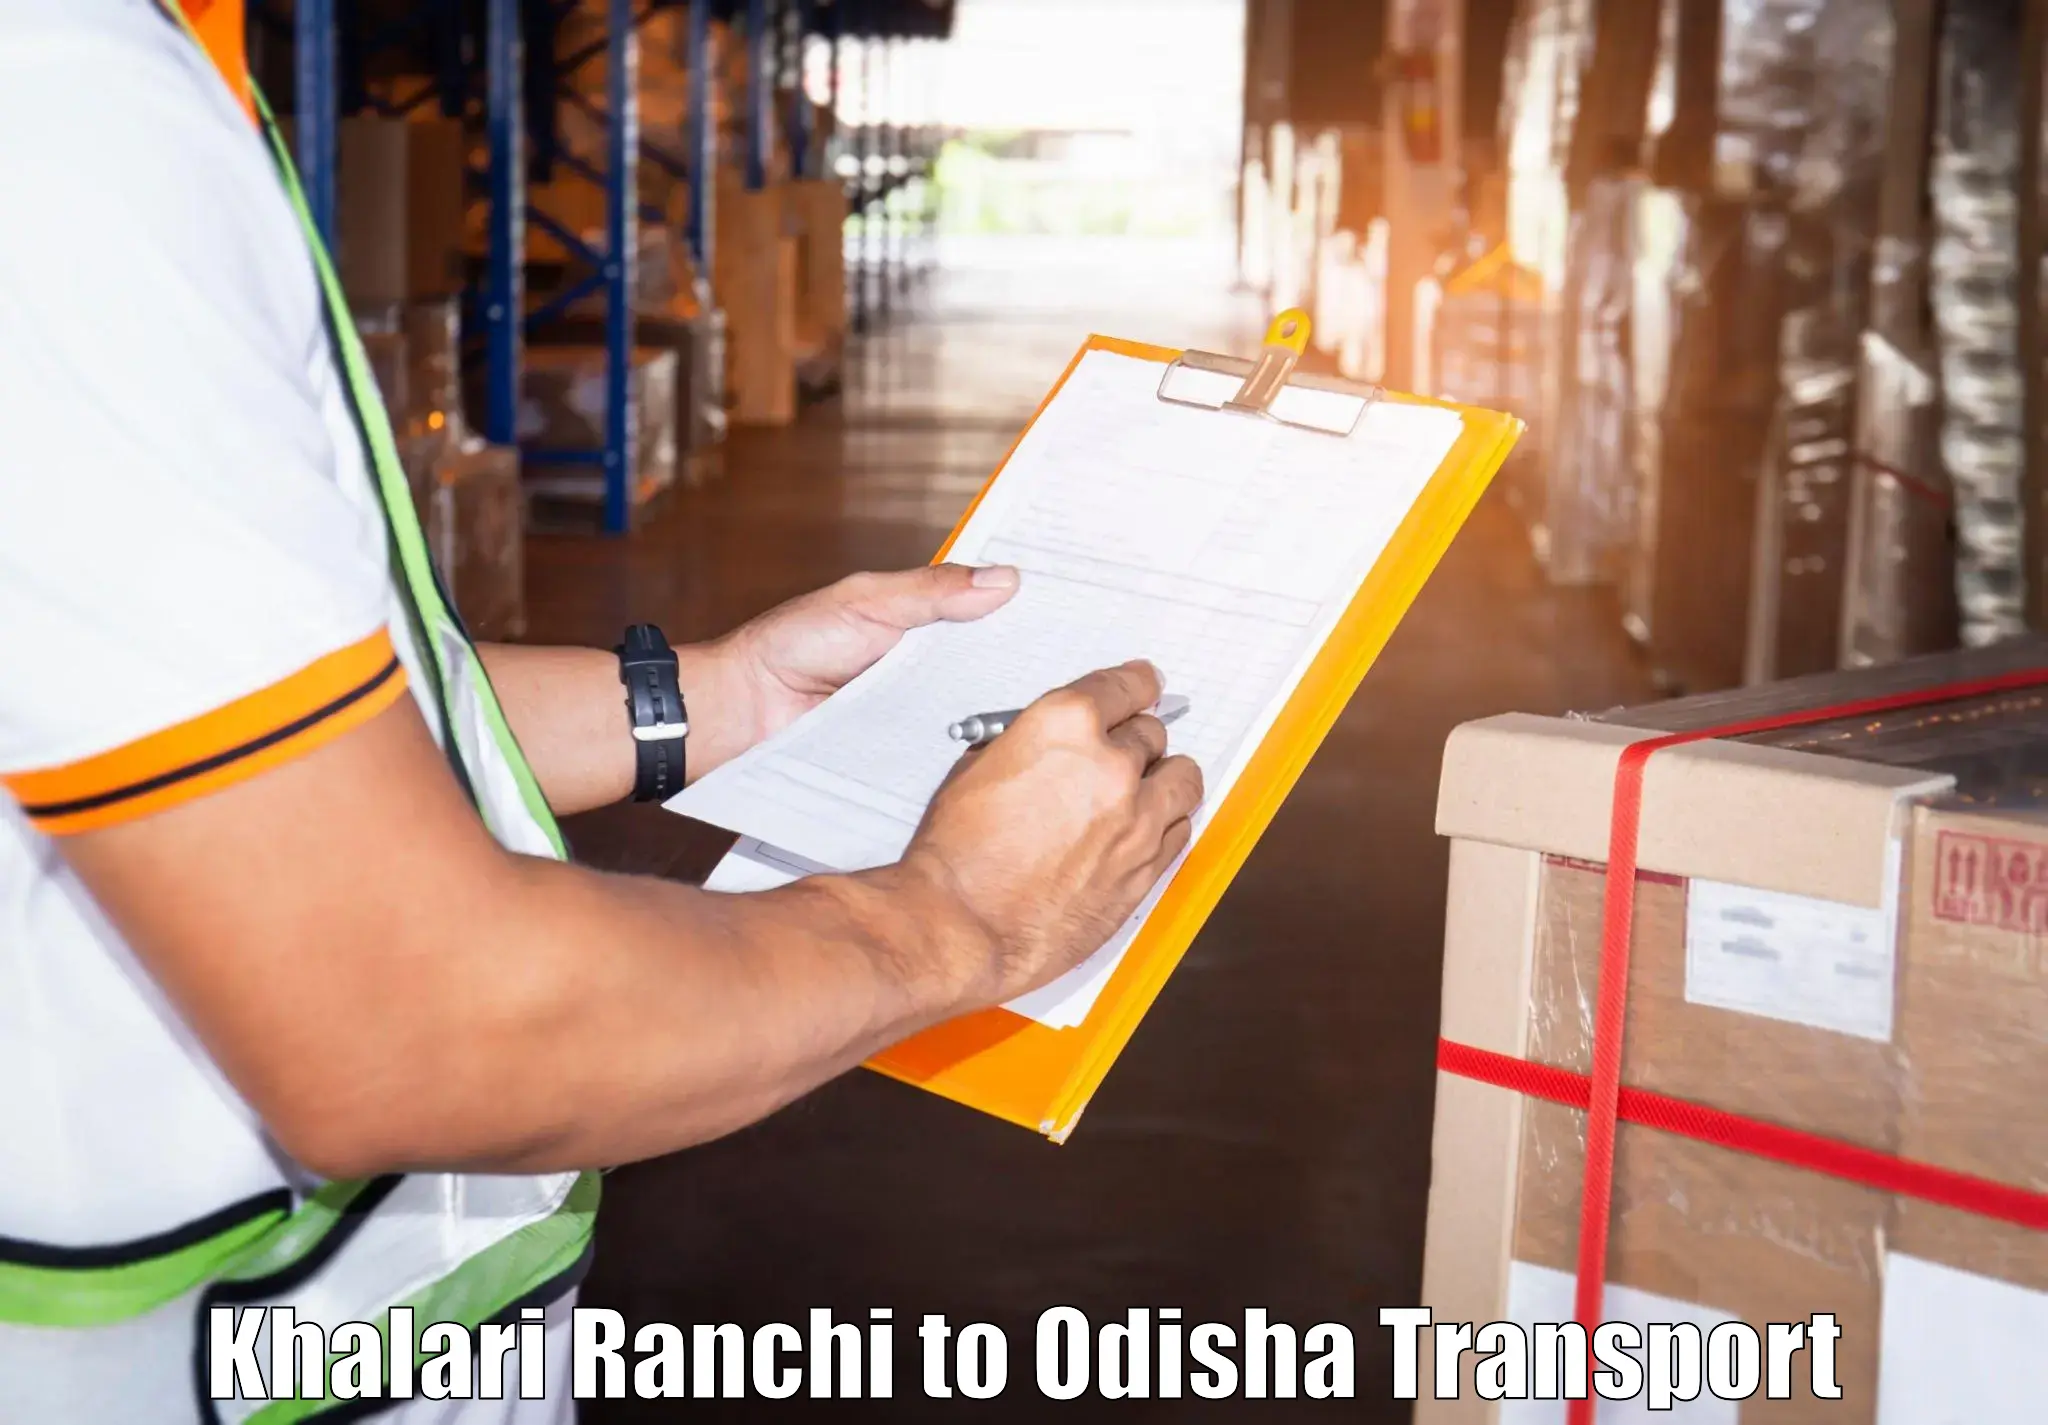 Transport in sharing Khalari Ranchi to Odisha